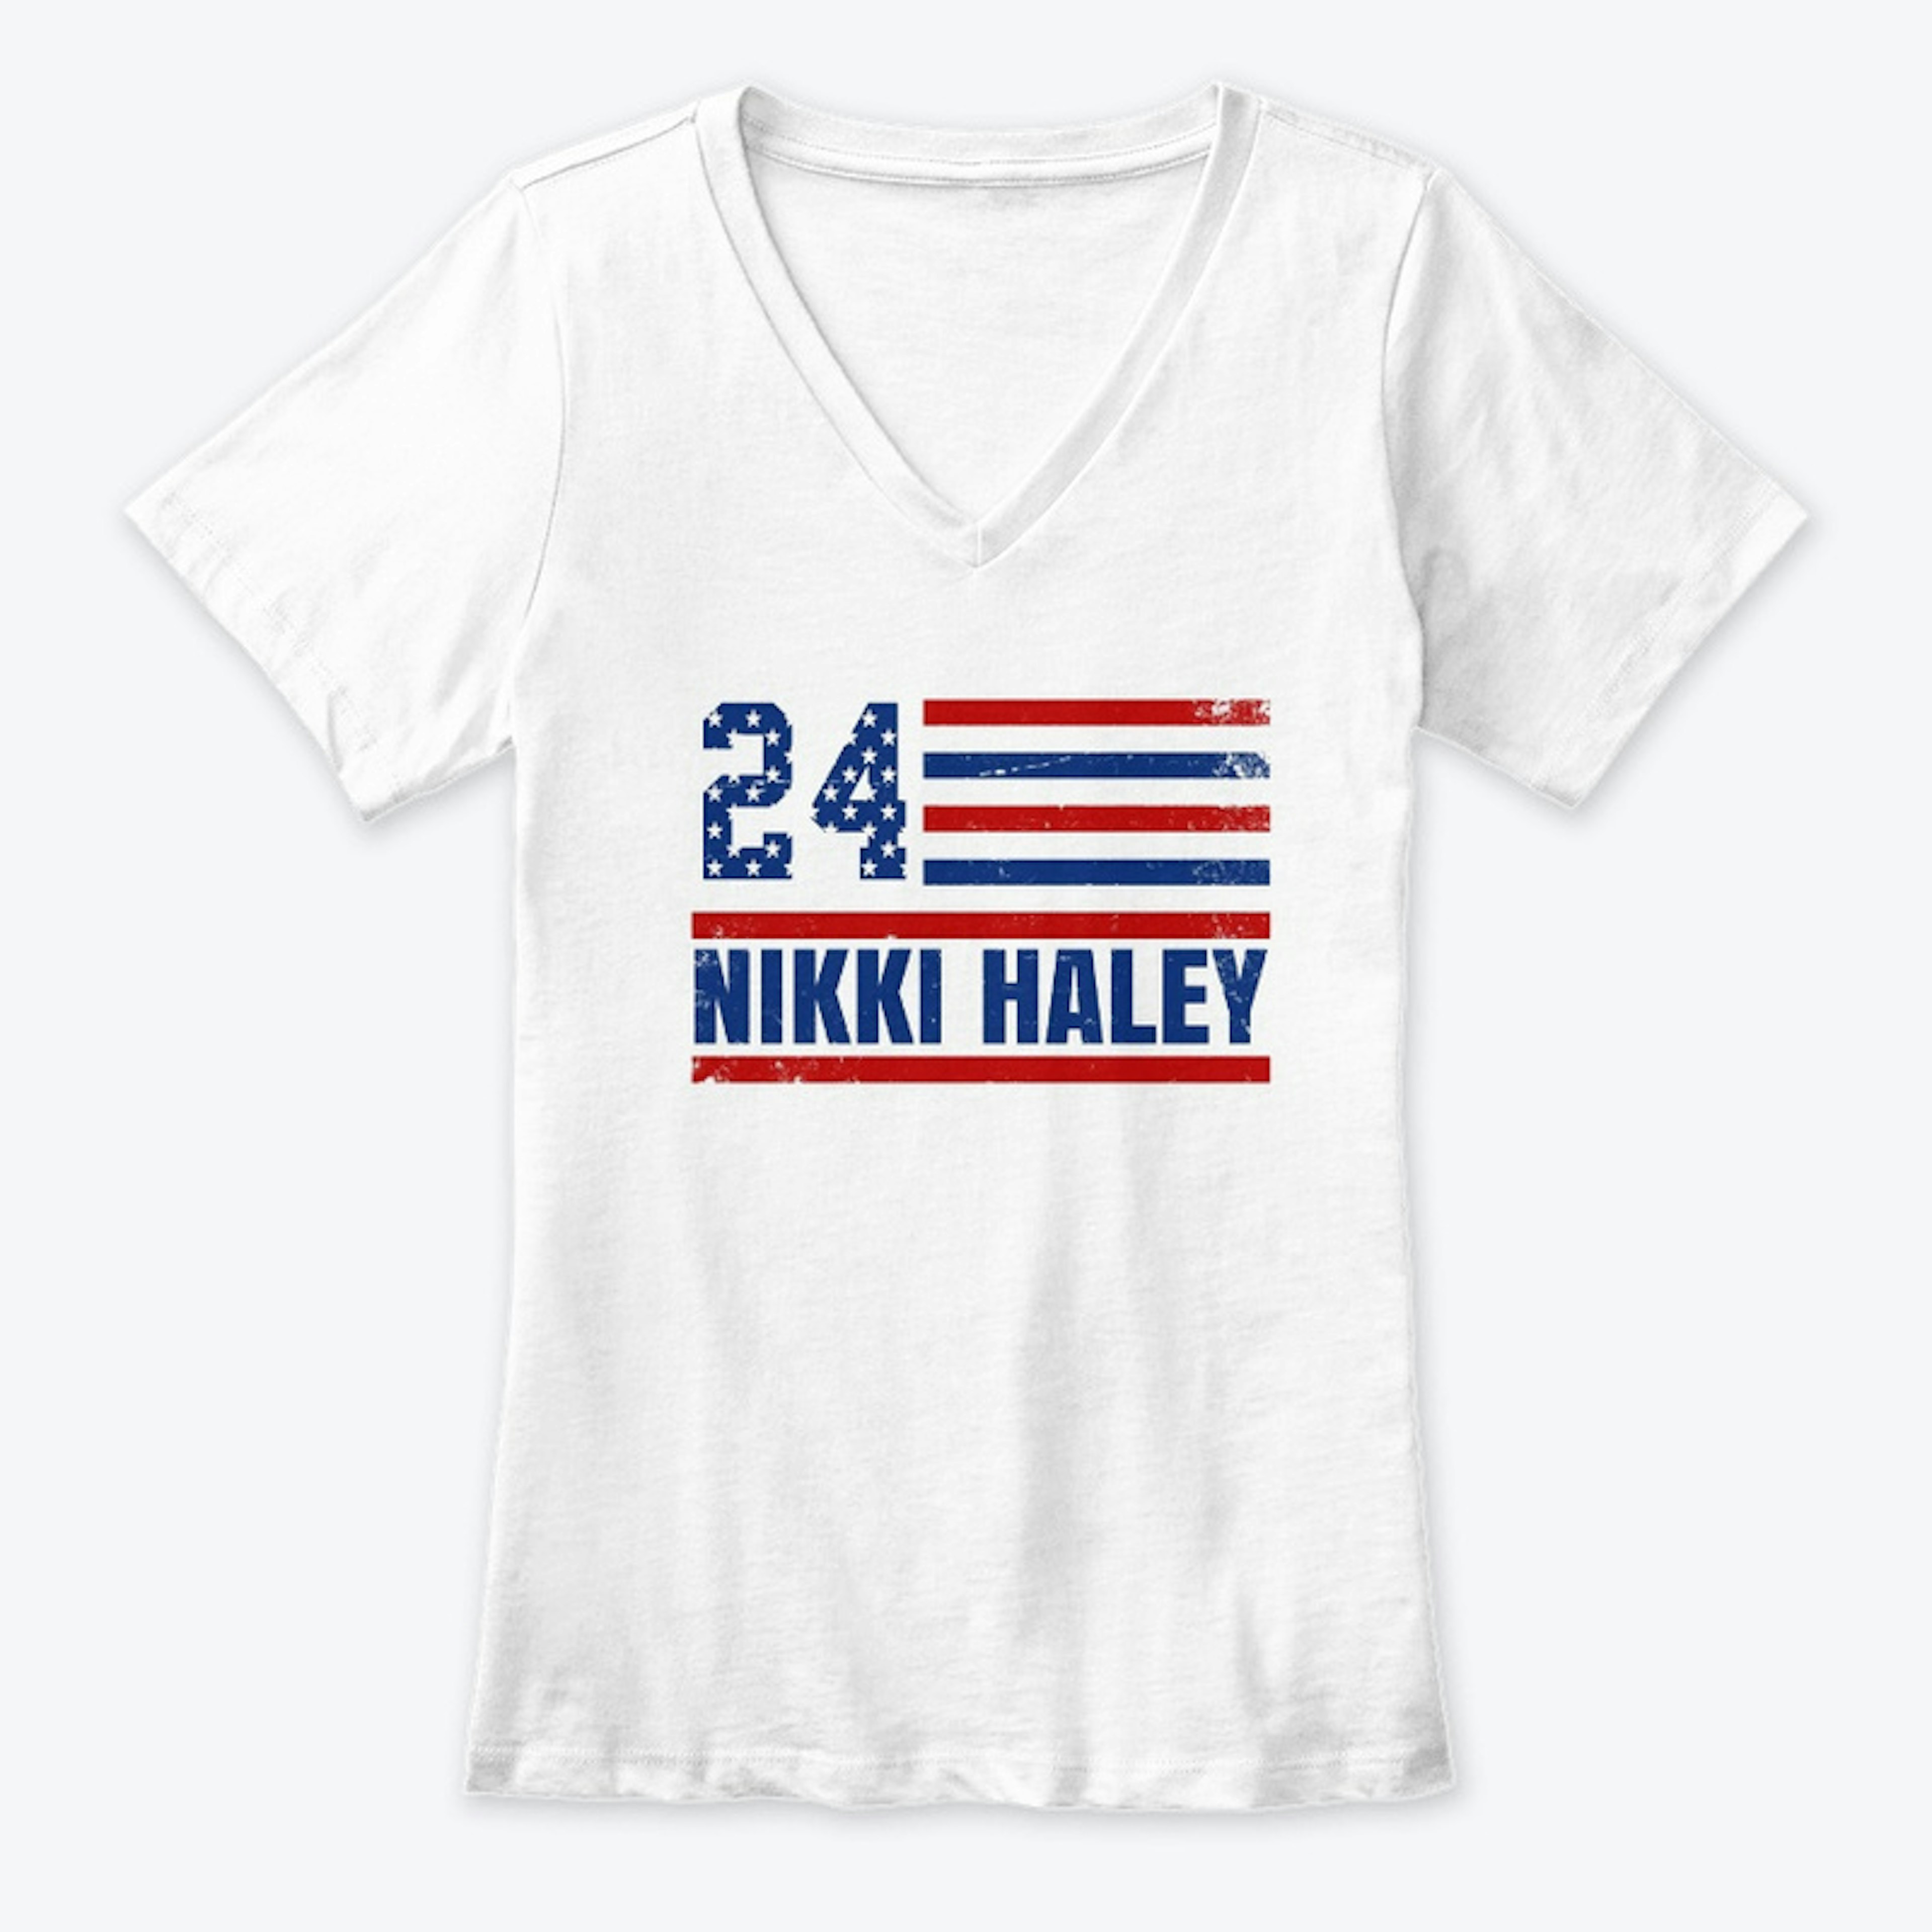 Nikki Haley 2024 Merch